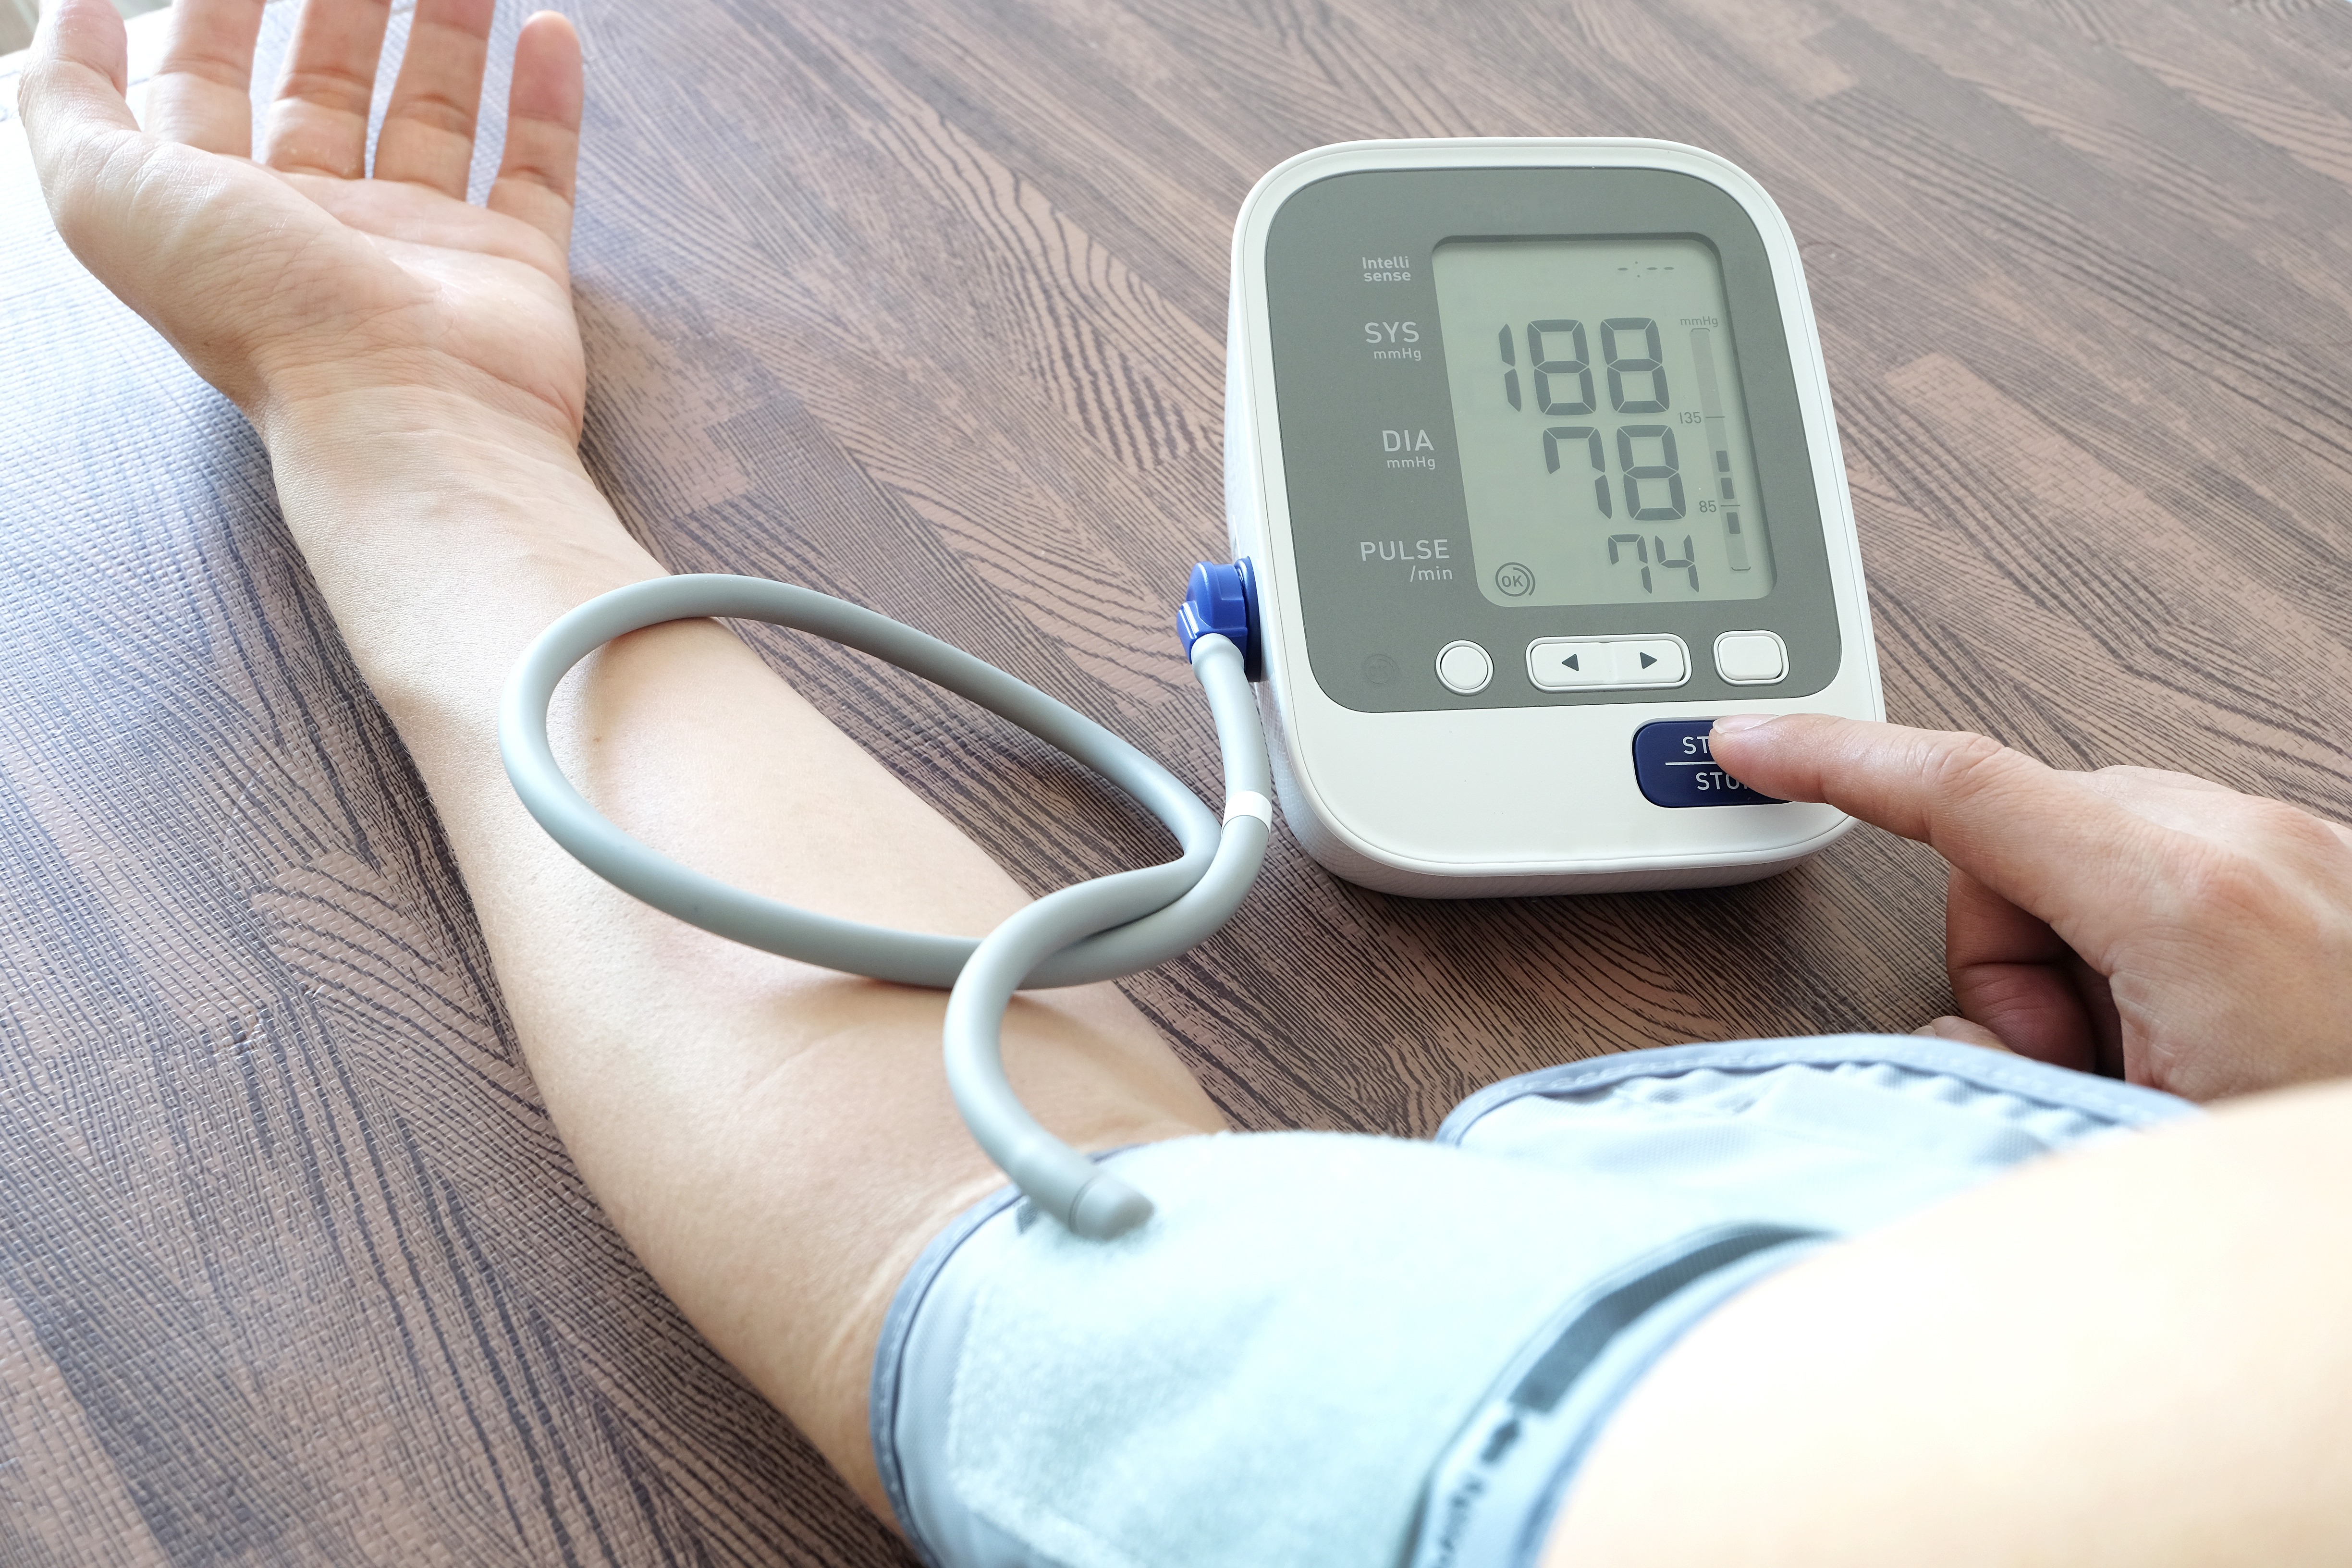 nézzen meg egy videót a magas vérnyomás kezeléséről